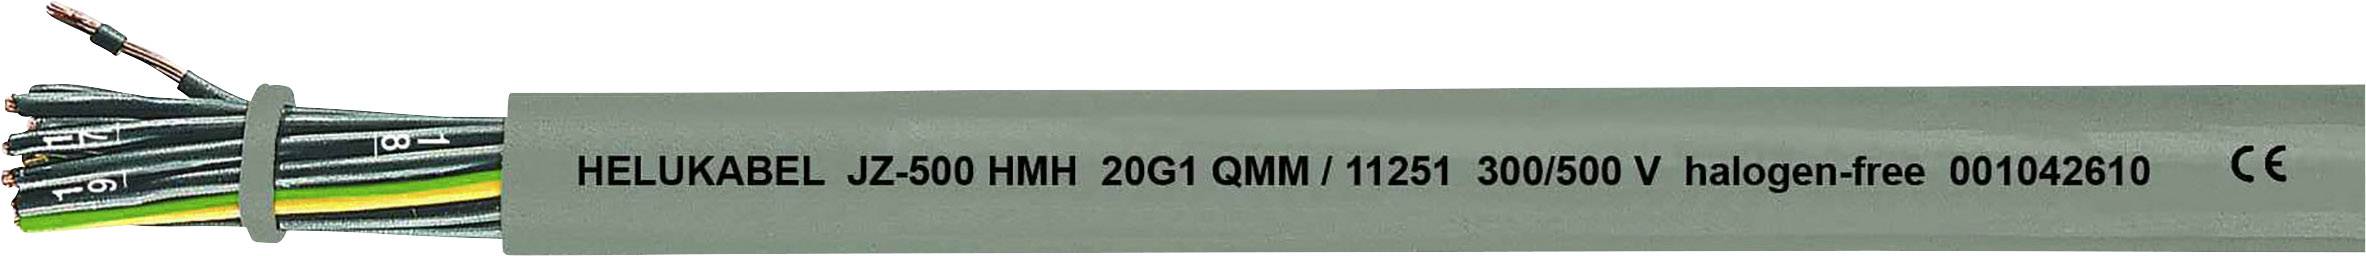 HELUKABEL JZ-500 HMH Steuerleitung 2 x 1 mm² Grau 11241-500 500 m